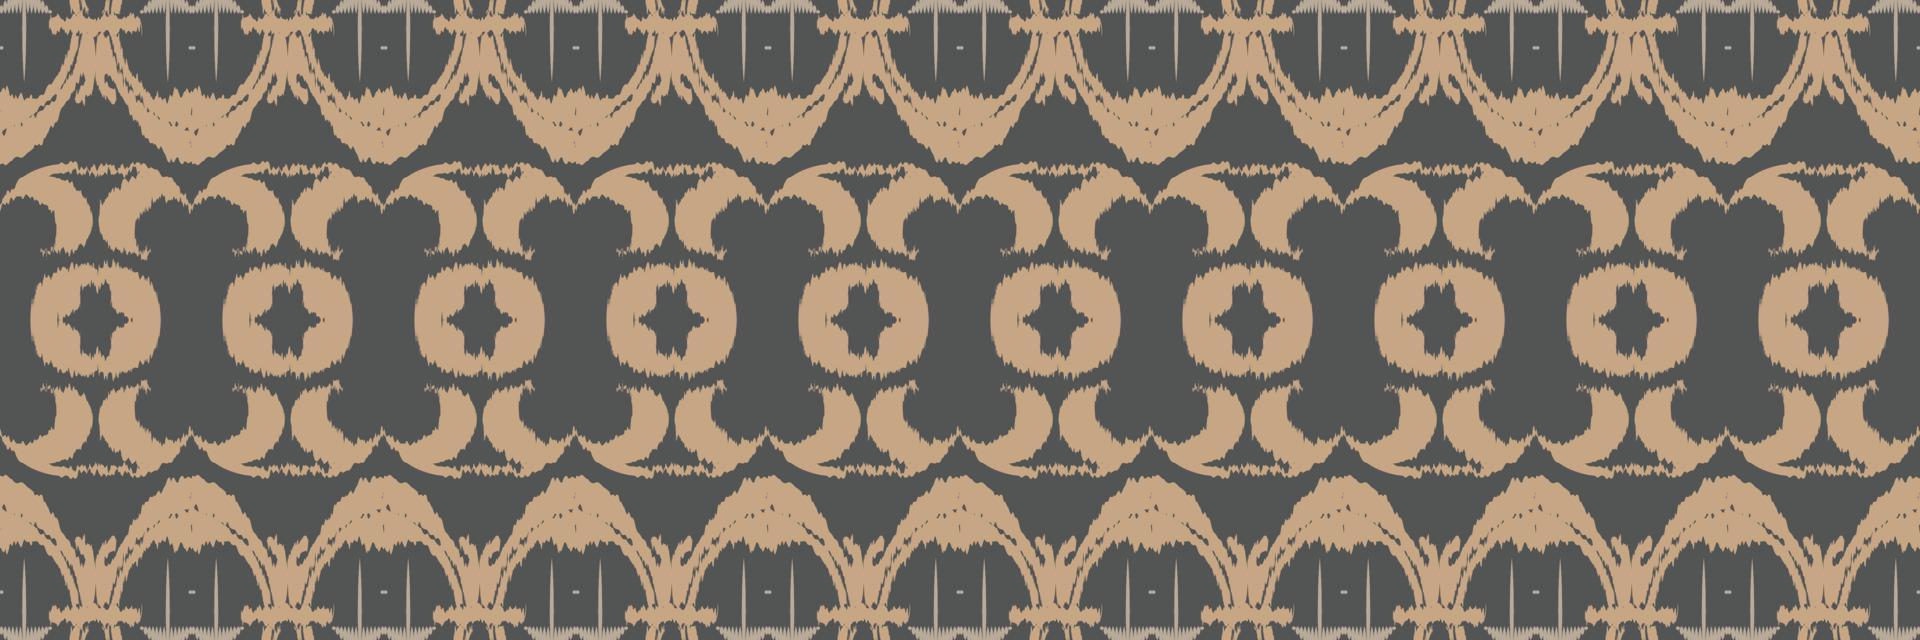 nahtloses muster der ikat-blumenstammesfarbe. ethnische geometrische ikkat batik digitaler vektor textildesign für drucke stoff saree mughal pinsel symbol schwaden textur kurti kurtis kurtas